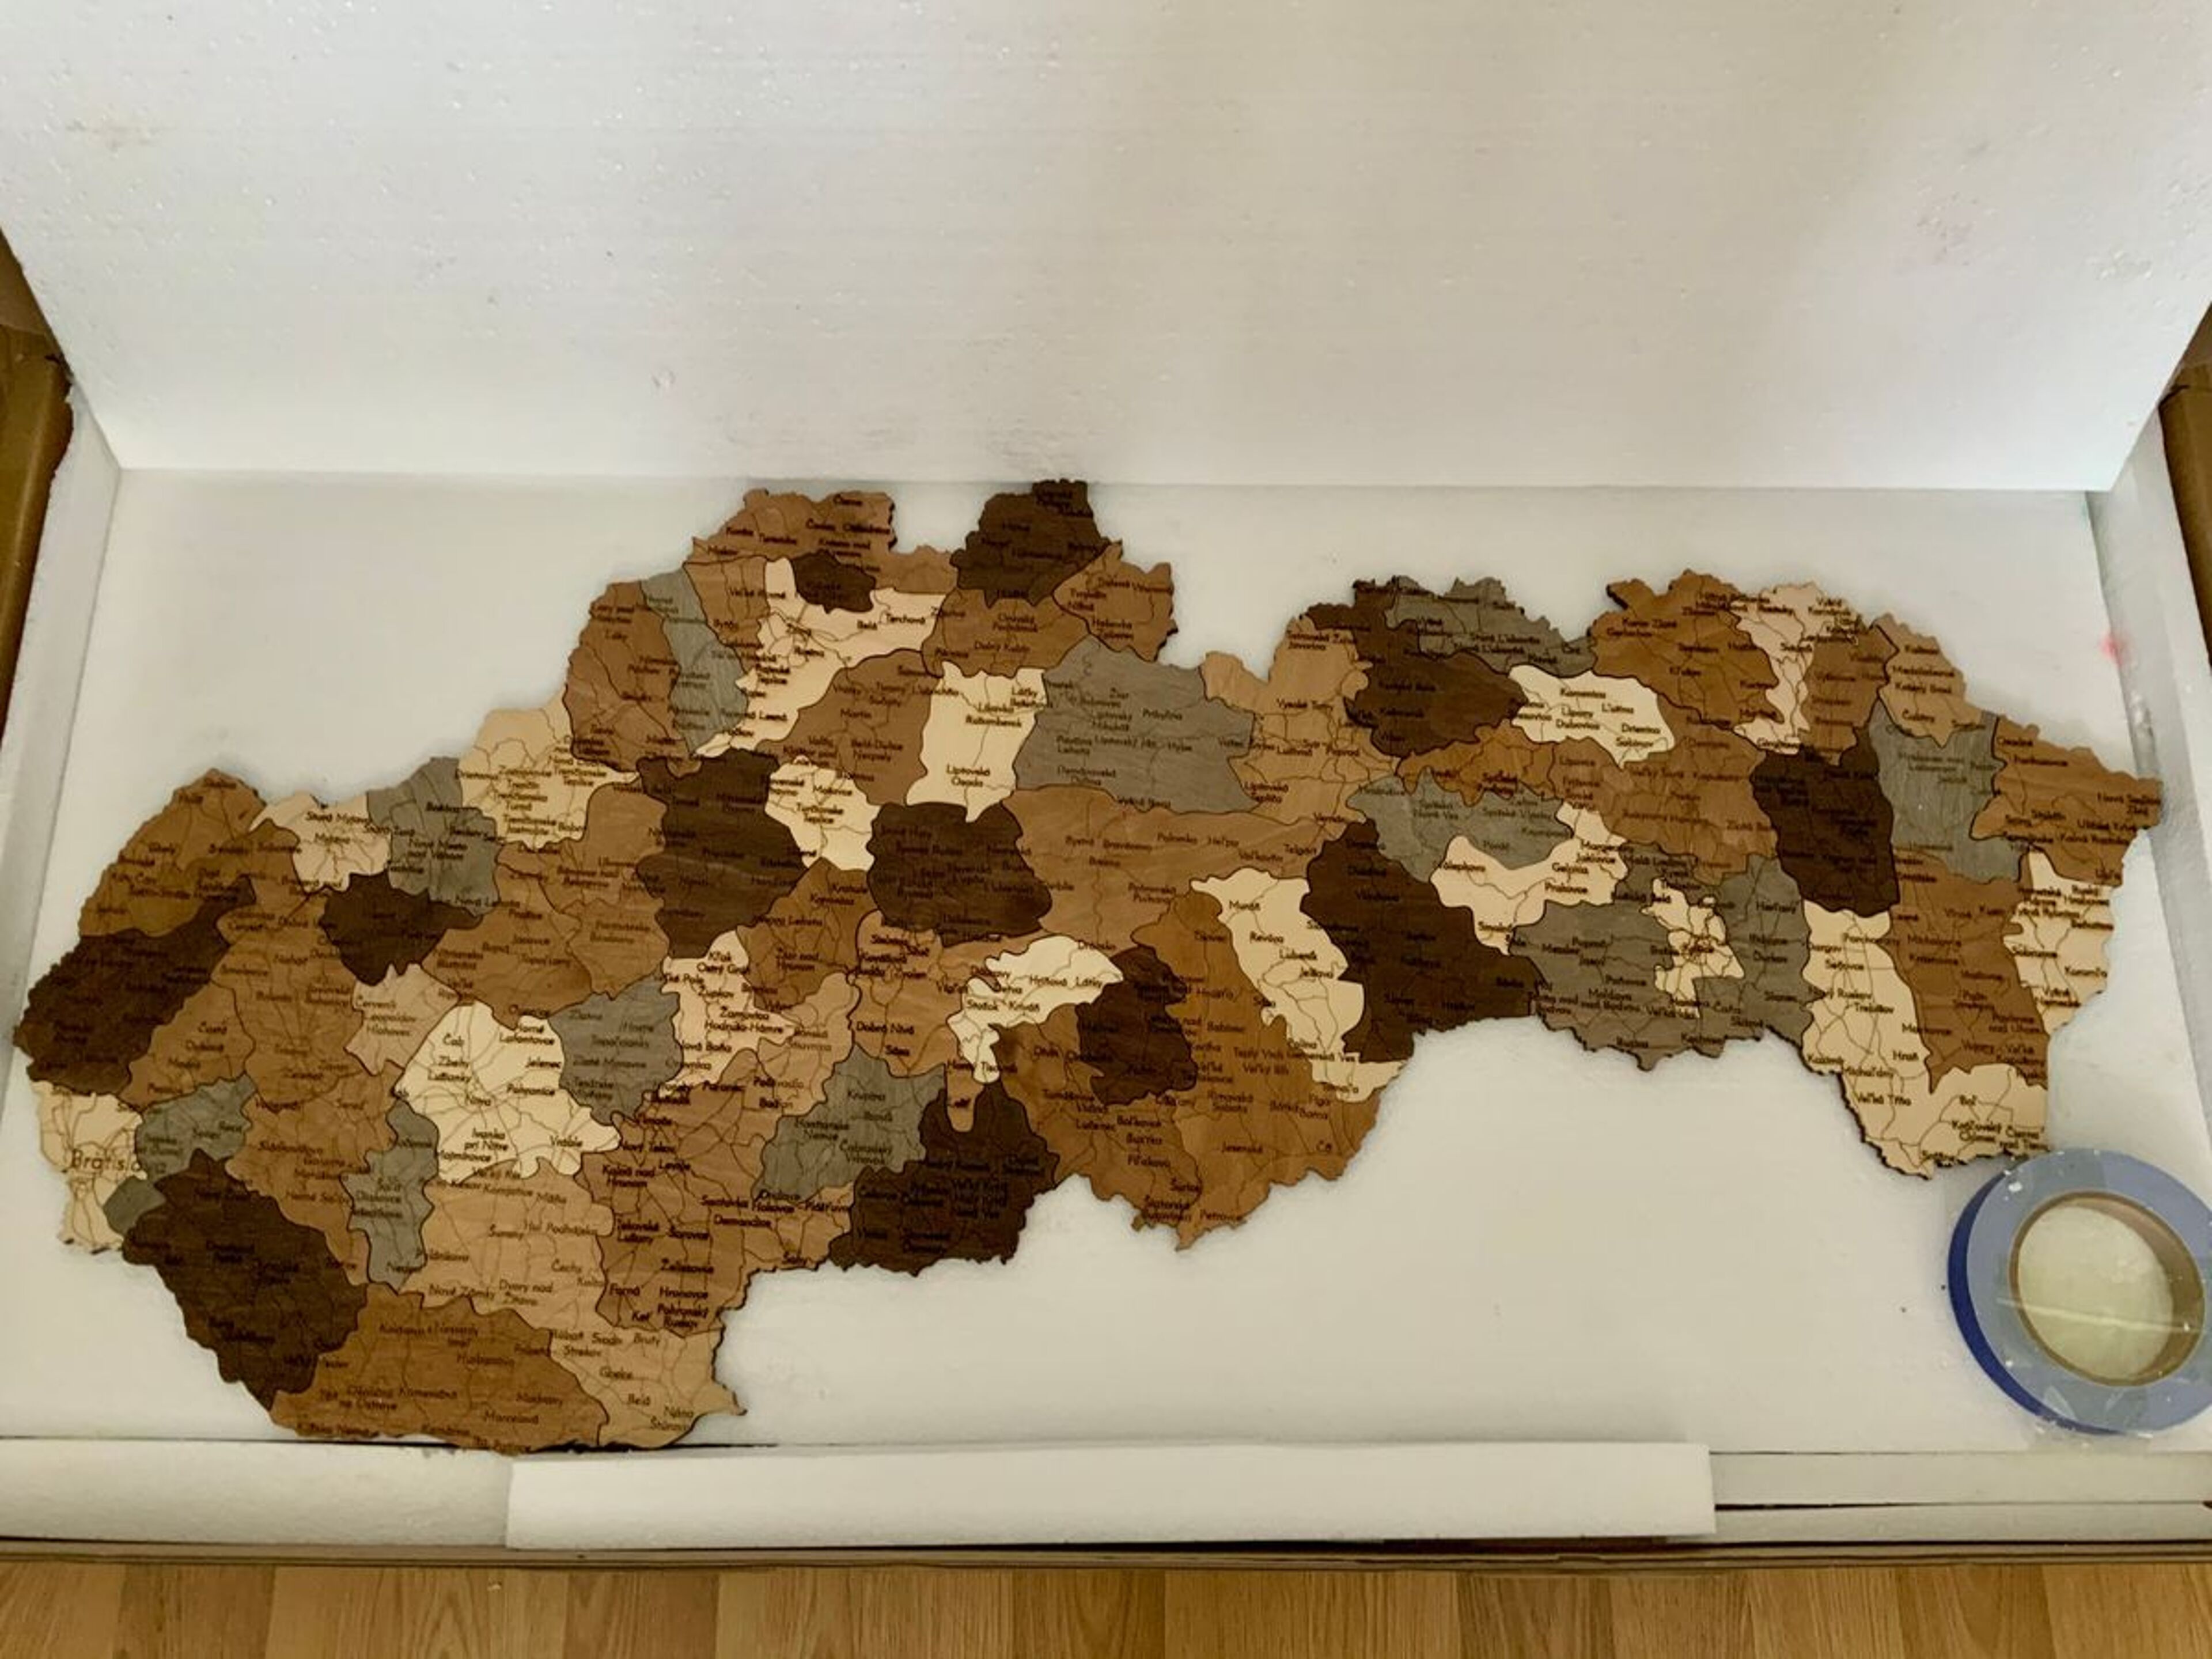 Reseña de Mapa de madera de Eslovaquia - imagen de Michal B.